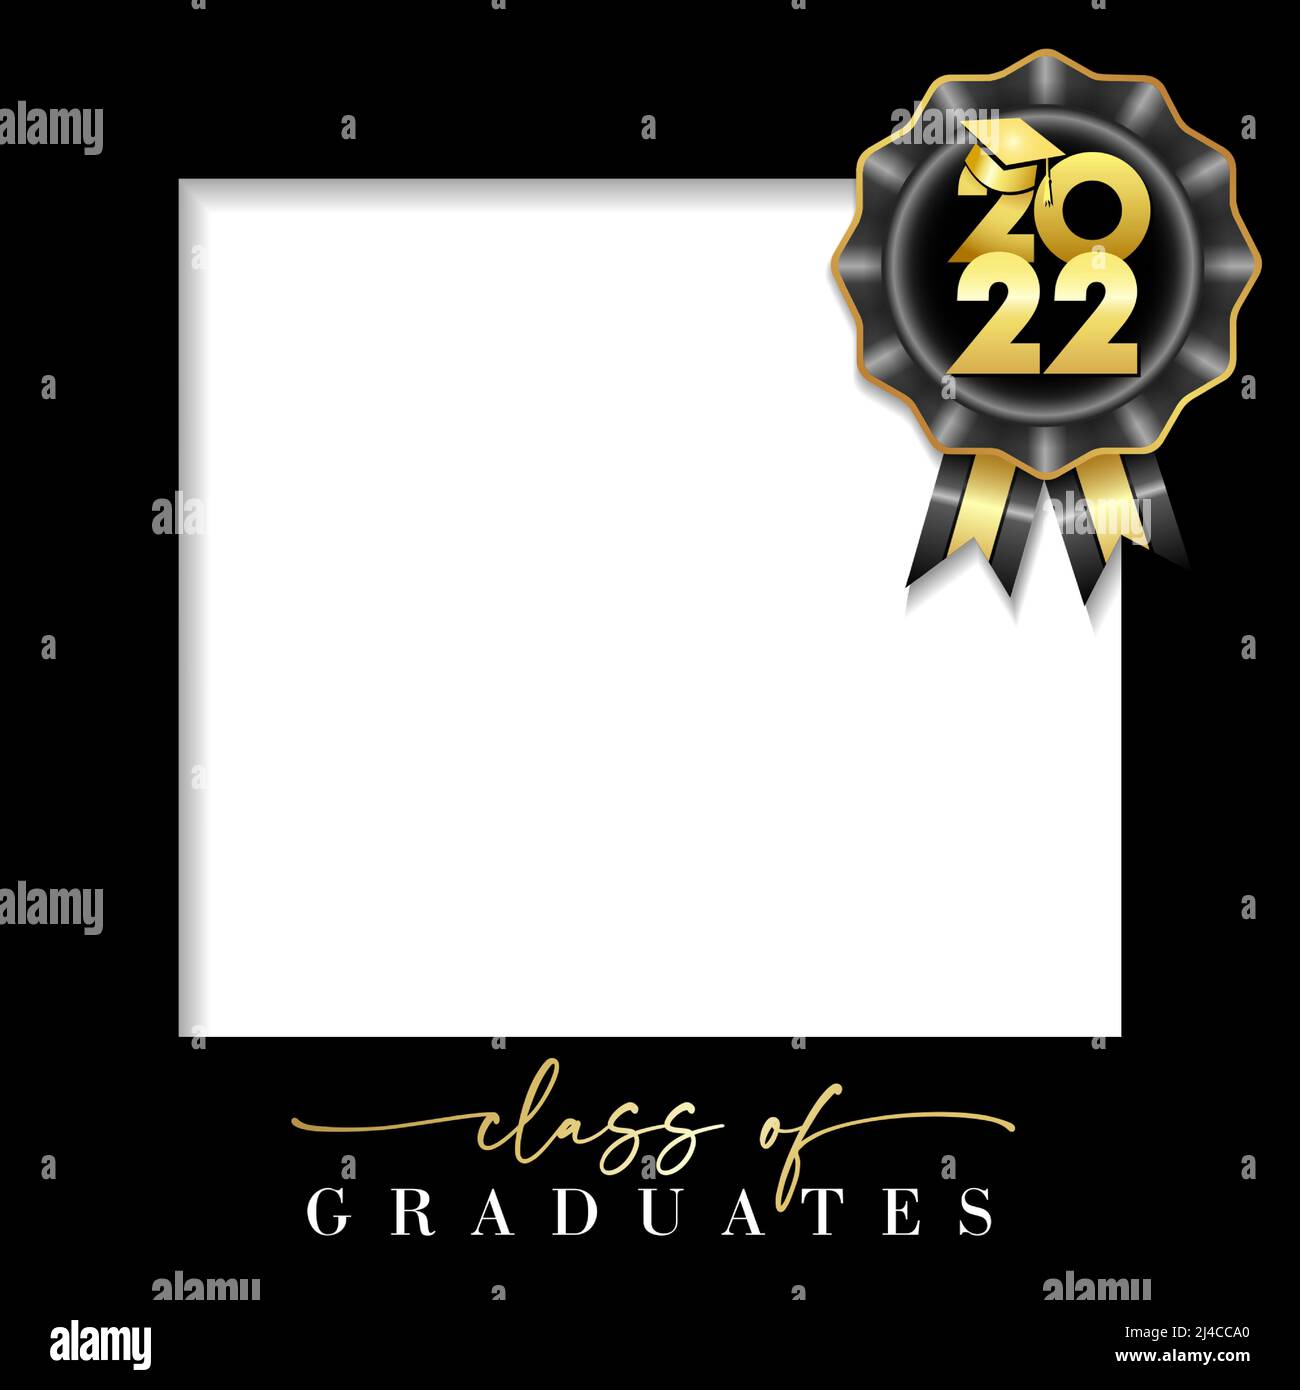 Klasse 2022, Graduation Fotorahmen. Hochschulabschluss mit schwarzem Rahmen und goldenen Zahlen mit akademischem Hut. Vektorkarte Stock Vektor